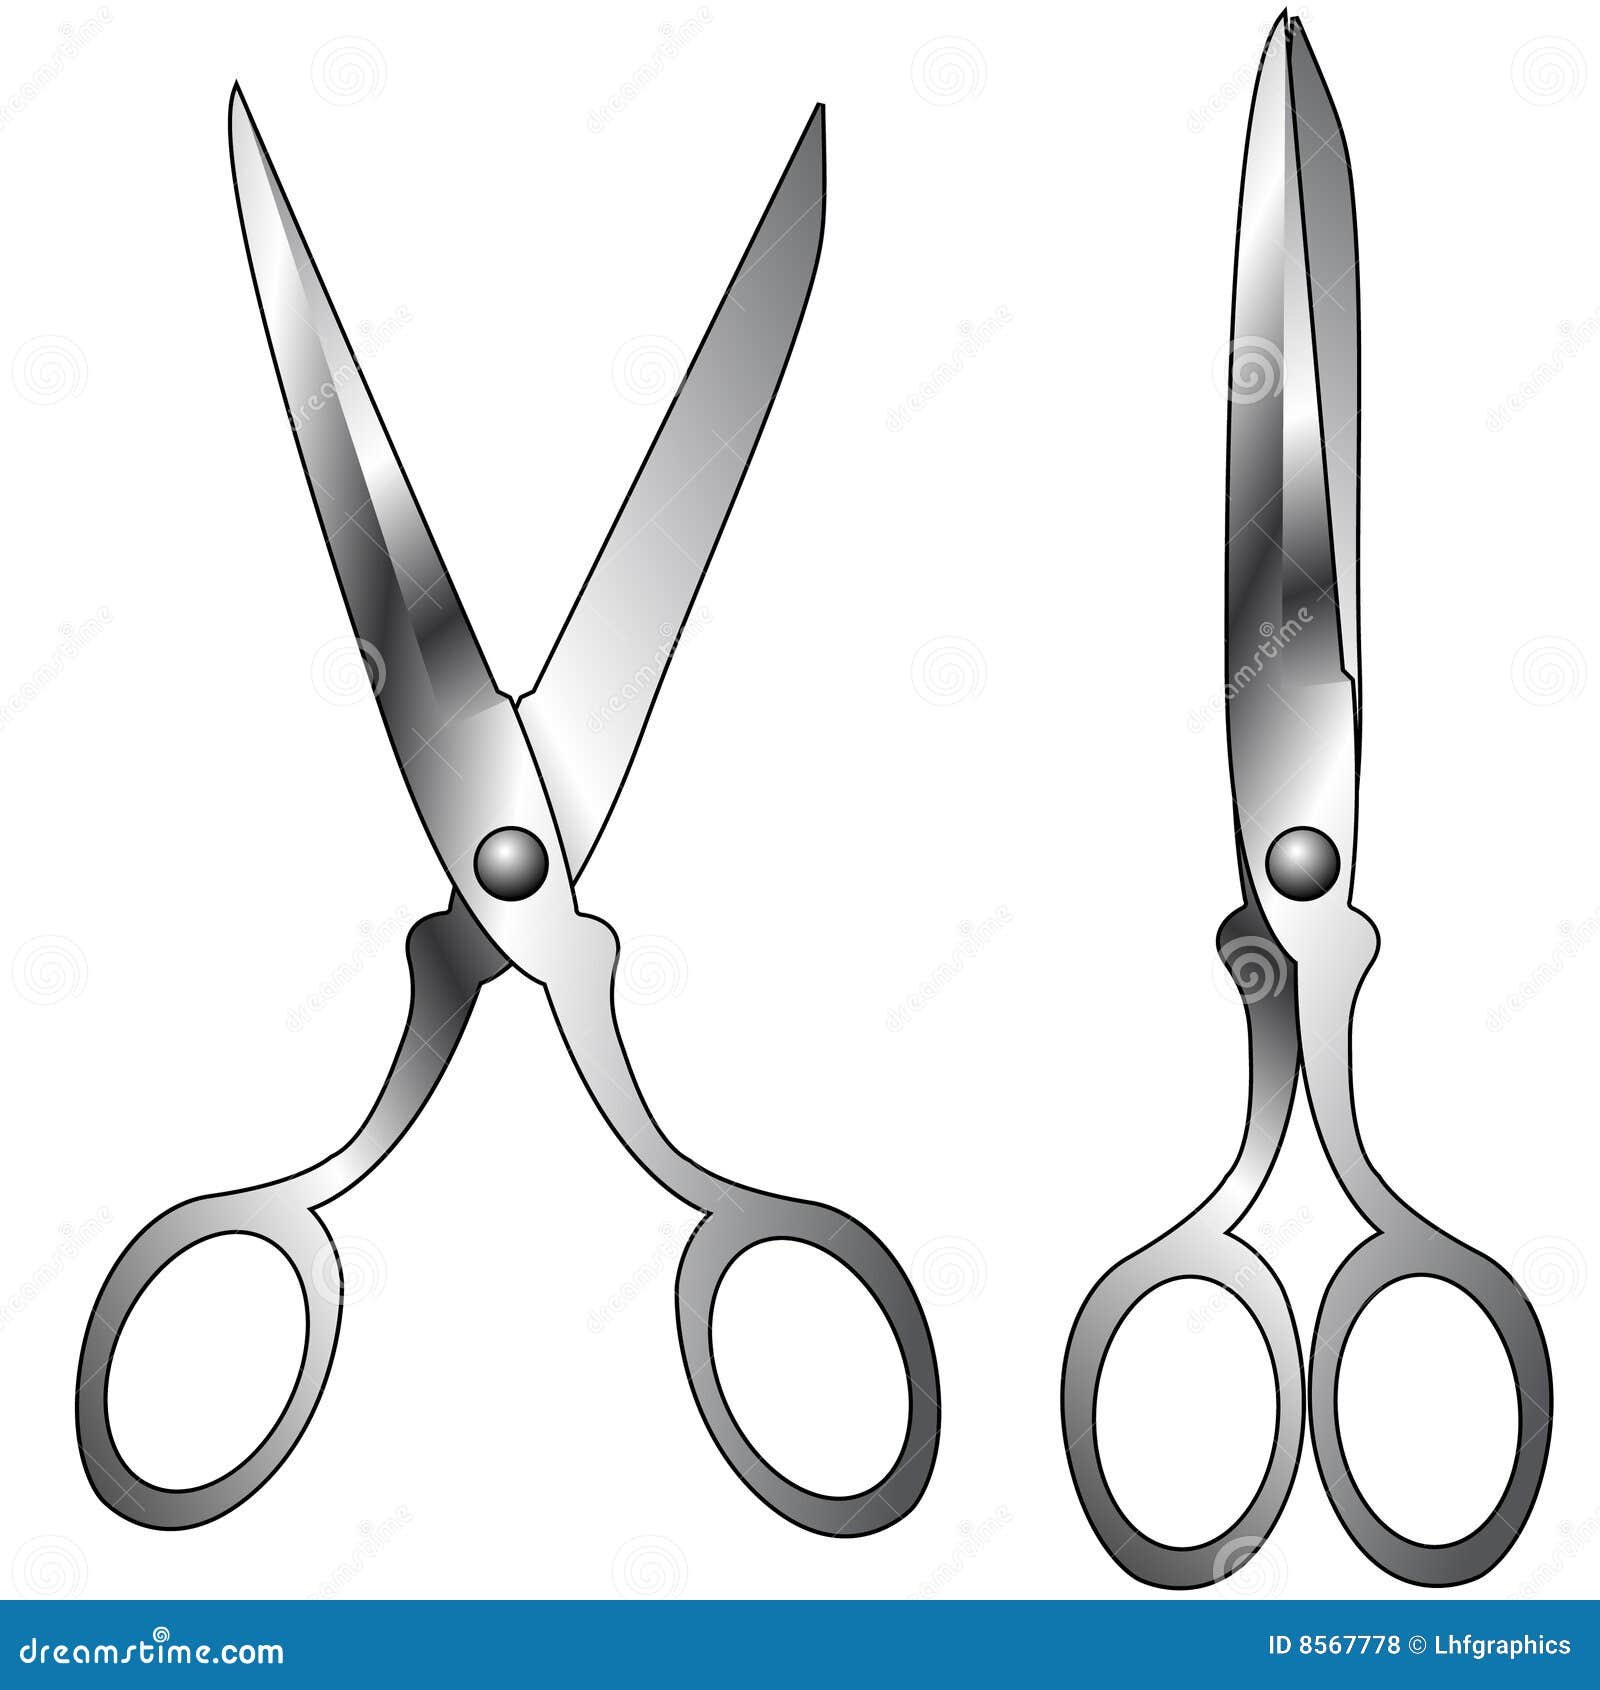   of household scissors